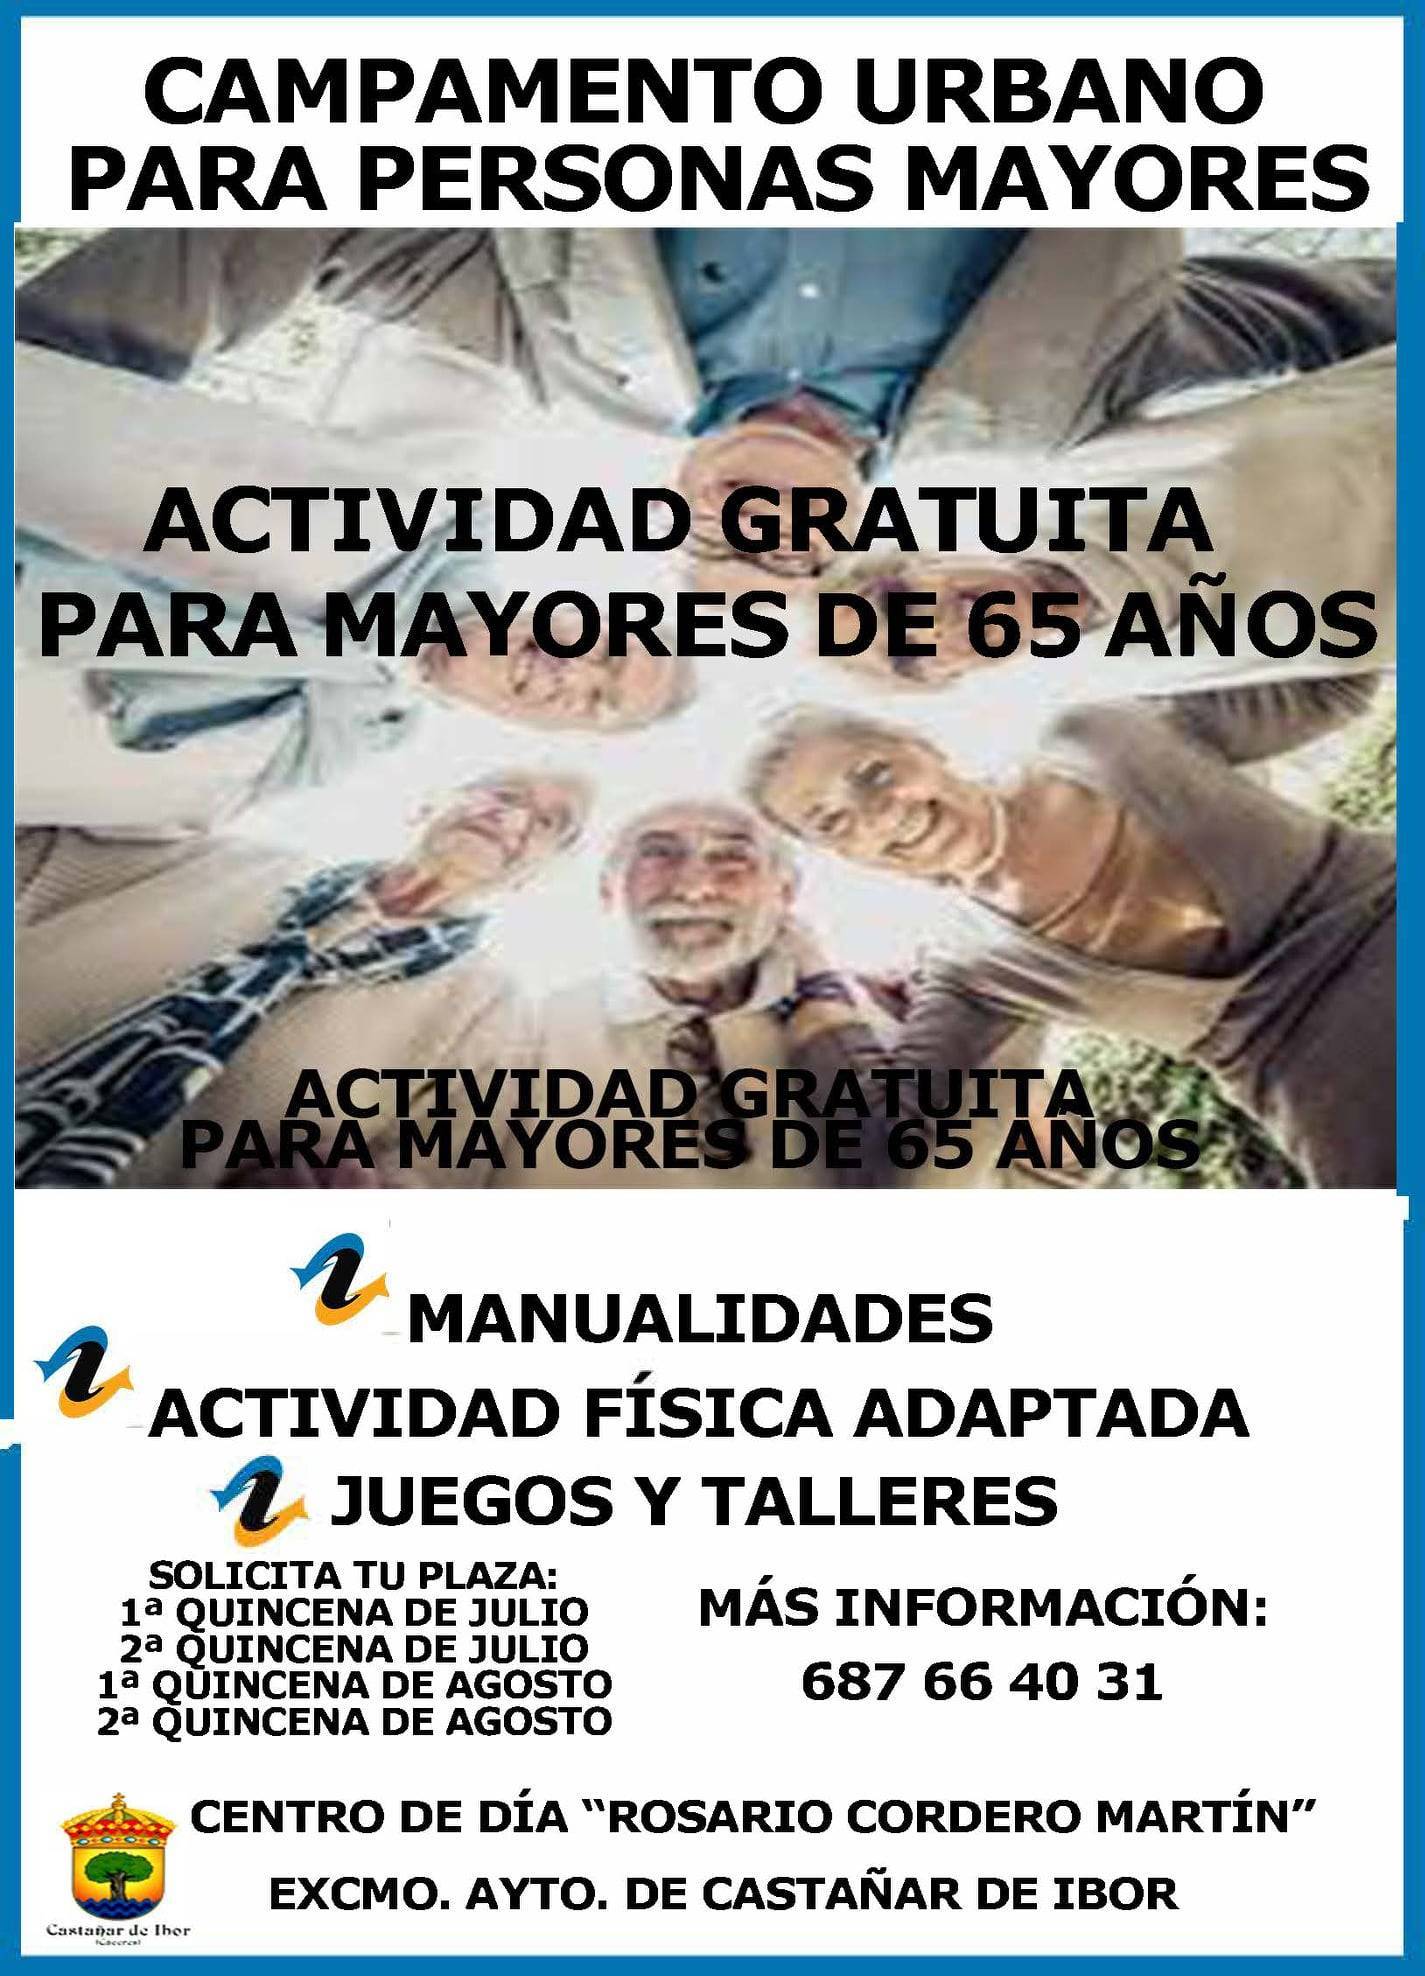 Campamento urbano de verano para personas mayores (2021) - Castañar de Ibor (Cáceres)